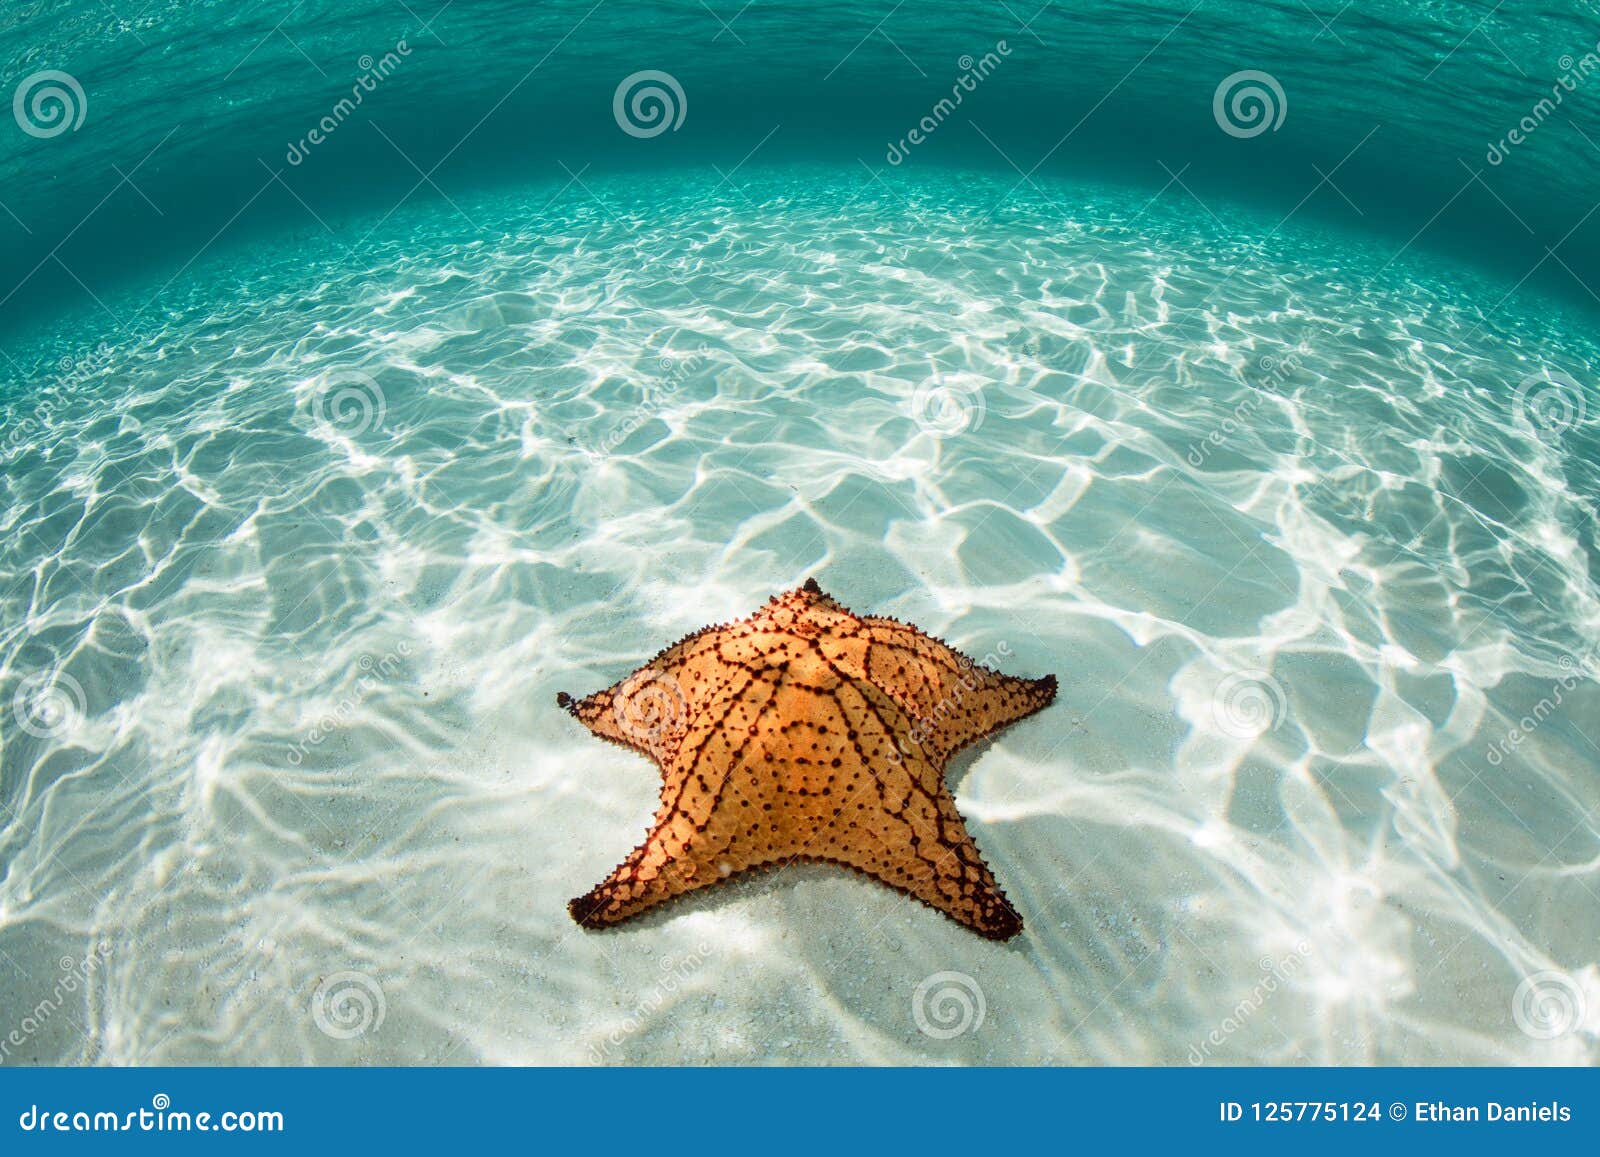 west indian sea star on seafloor of caribbean sea